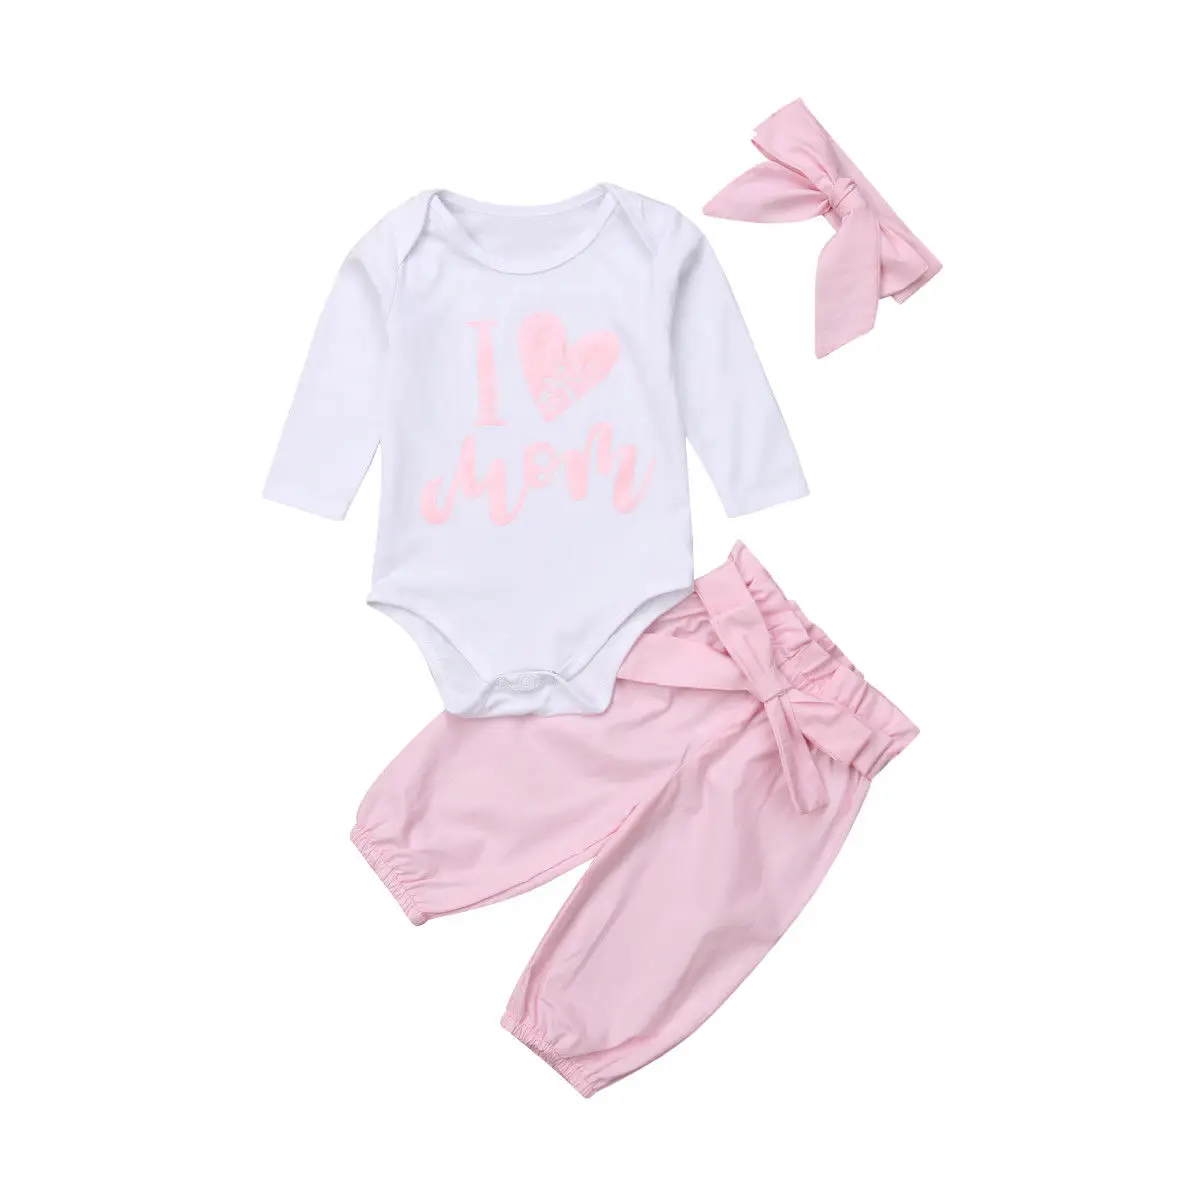 Pudcoco/комплект для девочек от 0 до 24 месяцев, 3 предмета, комбинезон для маленьких девочек+ длинные штаны+ повязка на голову, милые наряды комплект одежды для малышей - Цвет: Розовый